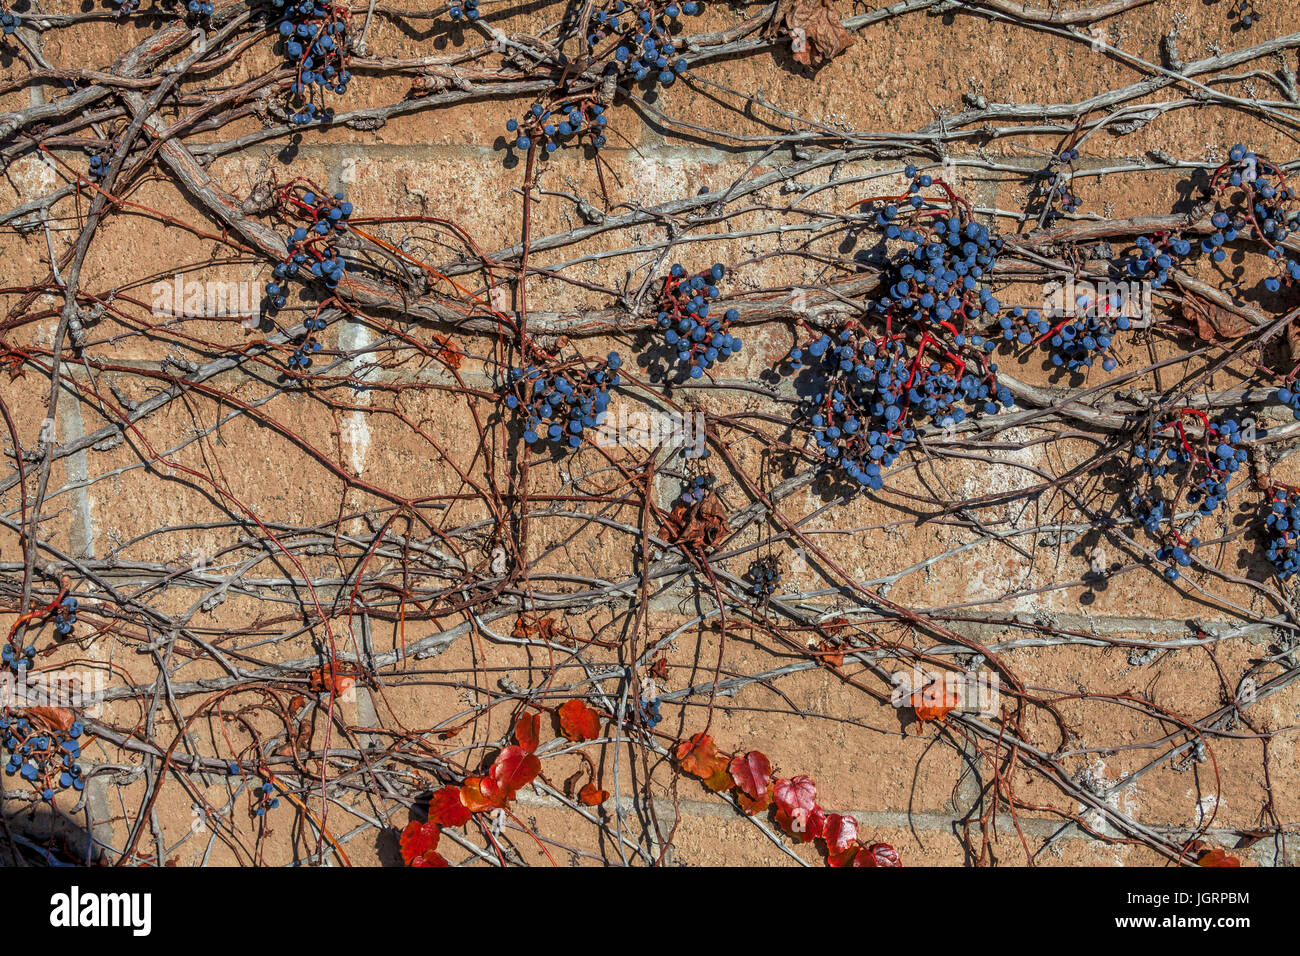 Klettern Sie Weinreben an einer Wand, Rittersporn, Kalifornien, USA Stockfoto